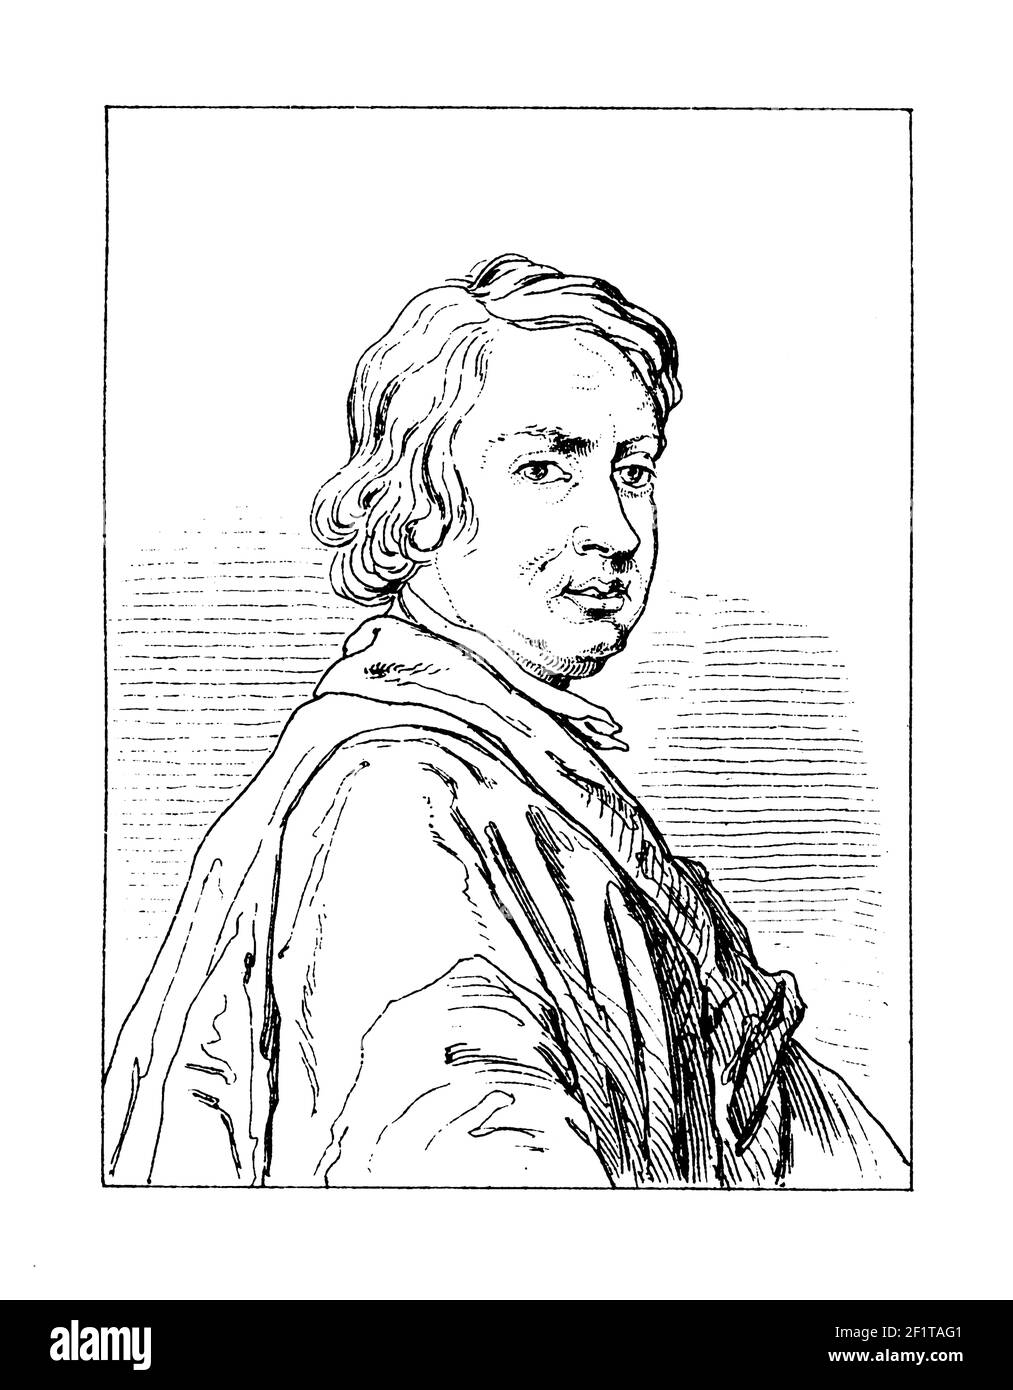 Antica illustrazione di un ritratto di John Dryden, poeta inglese, critico letterario, traduttore e drammaturgo. Nacque il 9 agosto 1631 ad Aldwi Foto Stock